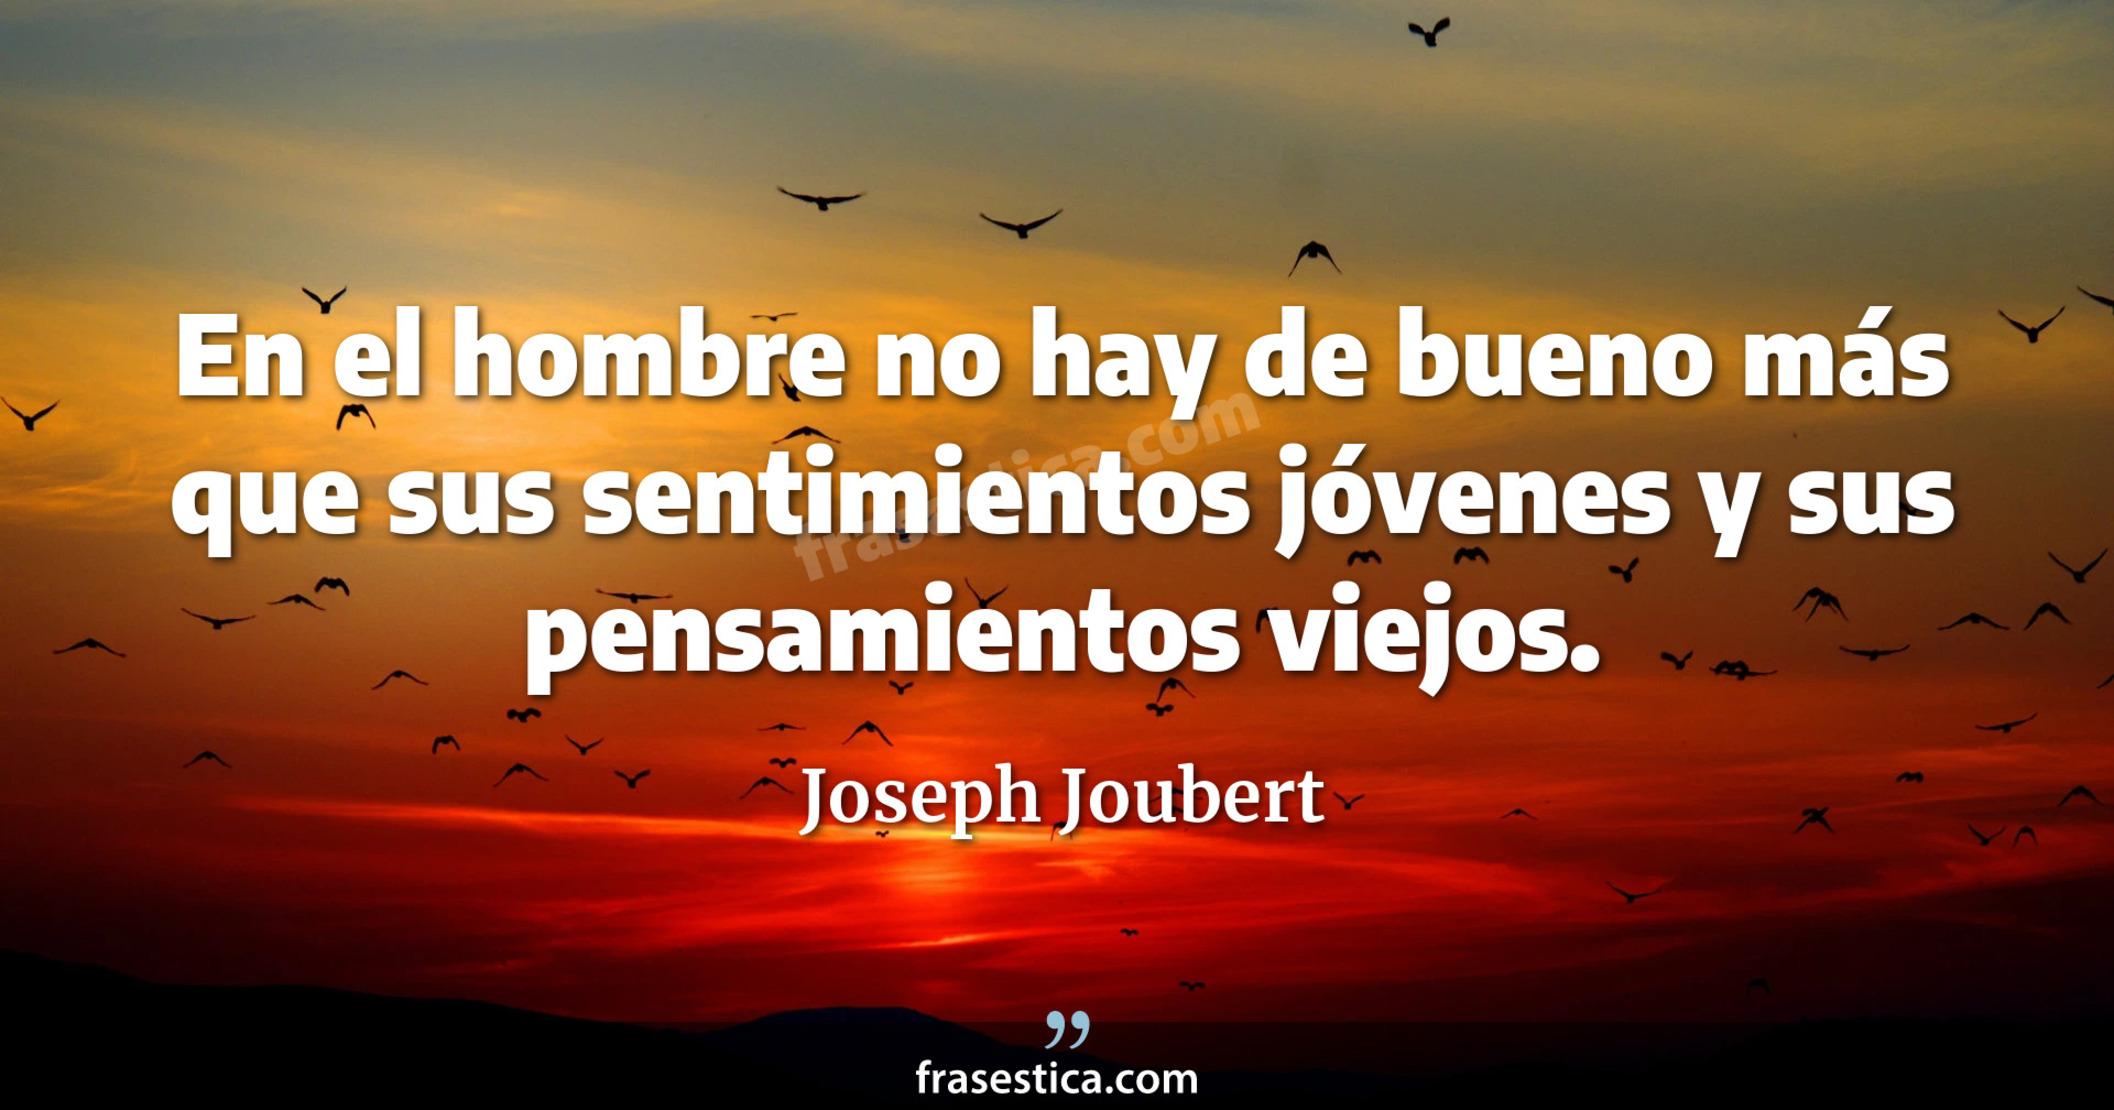 En el hombre no hay de bueno más que sus sentimientos jóvenes y sus pensamientos viejos. - Joseph Joubert